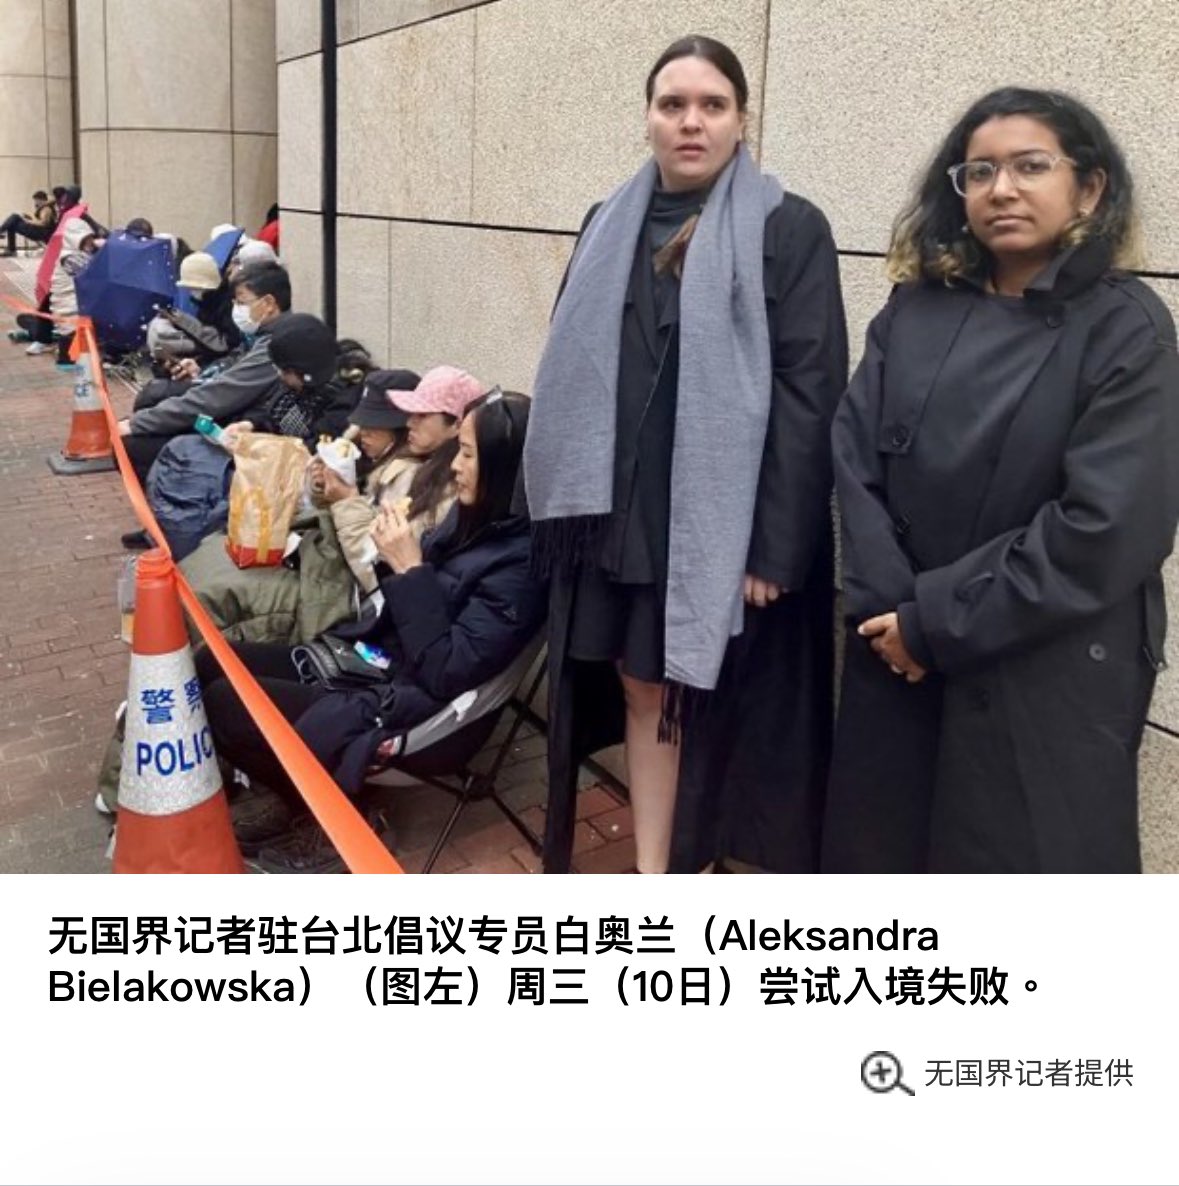 两名无国界记者的主要成员在周三（10日）尝试入境香港，原本计划出席法庭听取黎智英案件审讯，但其中一名成员被香港入境处人员扣查六个小时，随身物品被搜查了三遍，然后被递解出境。同行的无国界记者东亚办事处执行长虽然顺利入境，但当天自行离开香港。无国界记者表示，他们在其他国家从未遭受过这种…